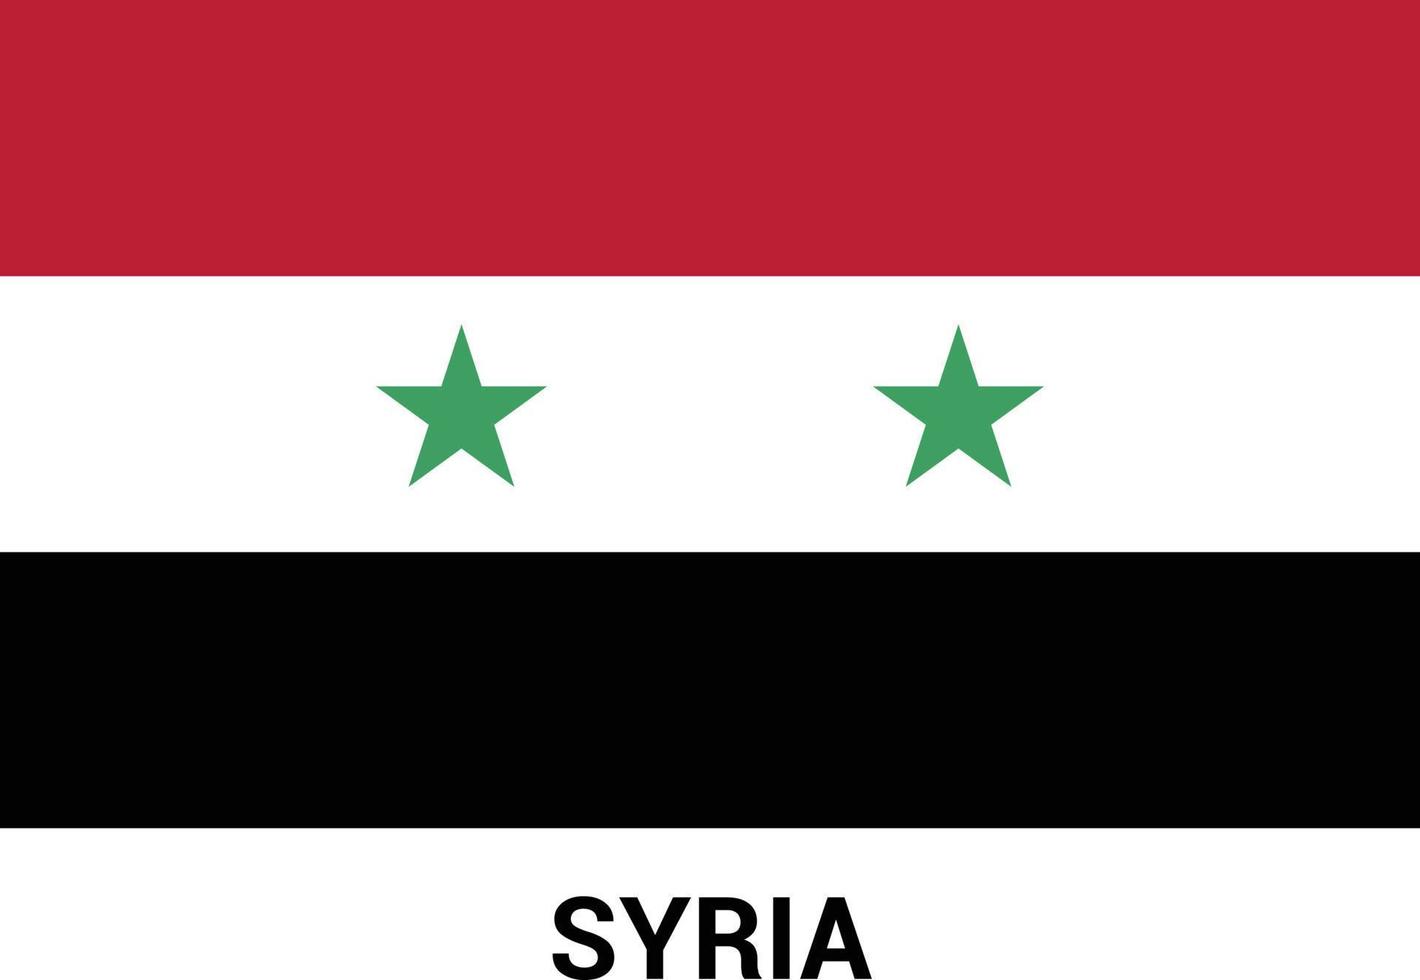 vector de diseño de bandera de siria